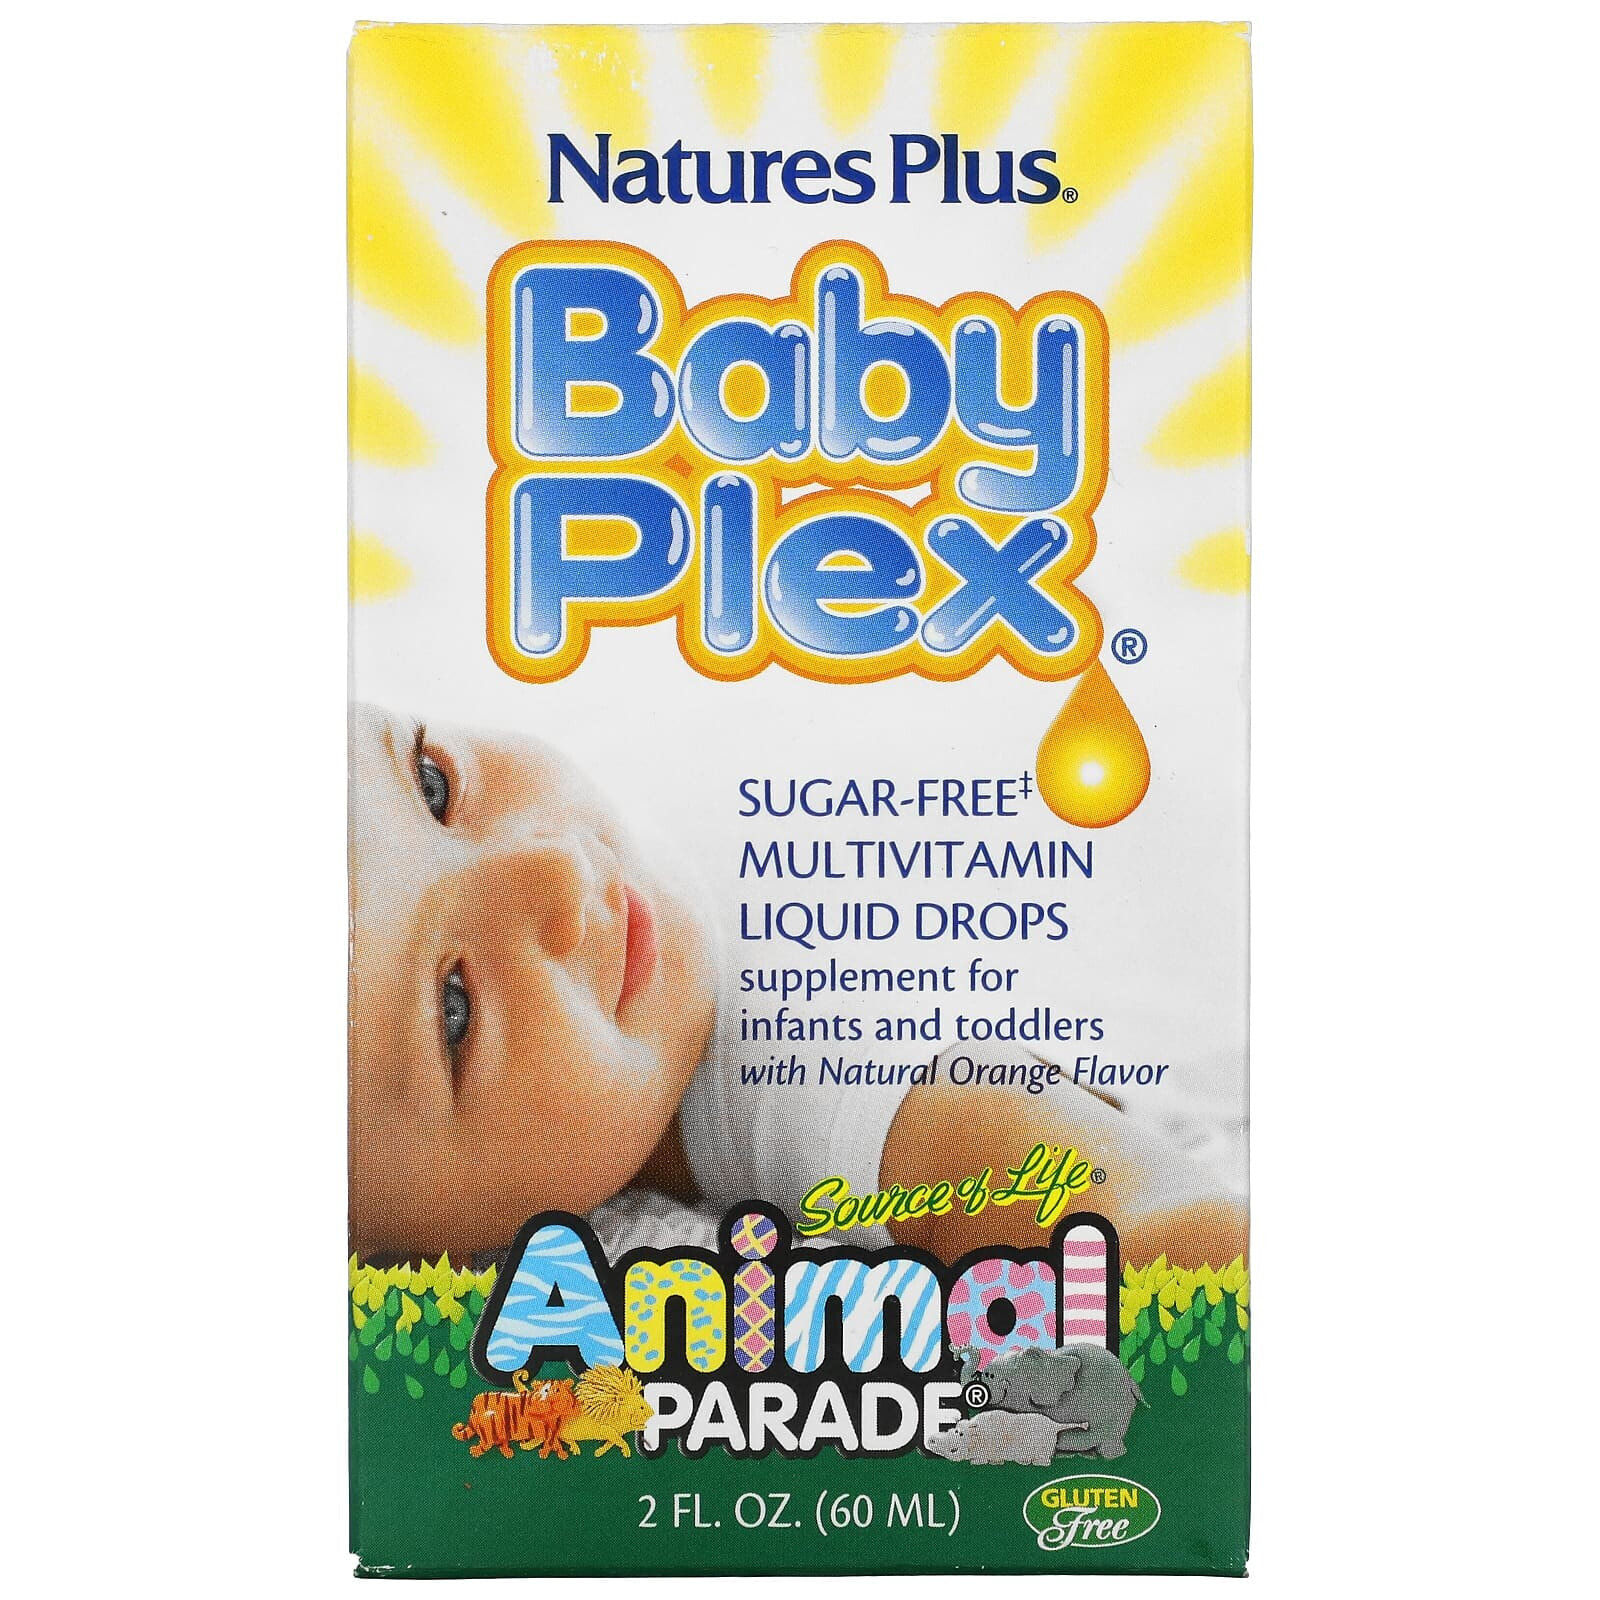 Натурес Плюс, Source of Life, Animal Parade, Baby Plex, жидкие мультивитаминные капли без сахара, с натуральным вкусом апельсина, 2 жидкие унции (60 мл)